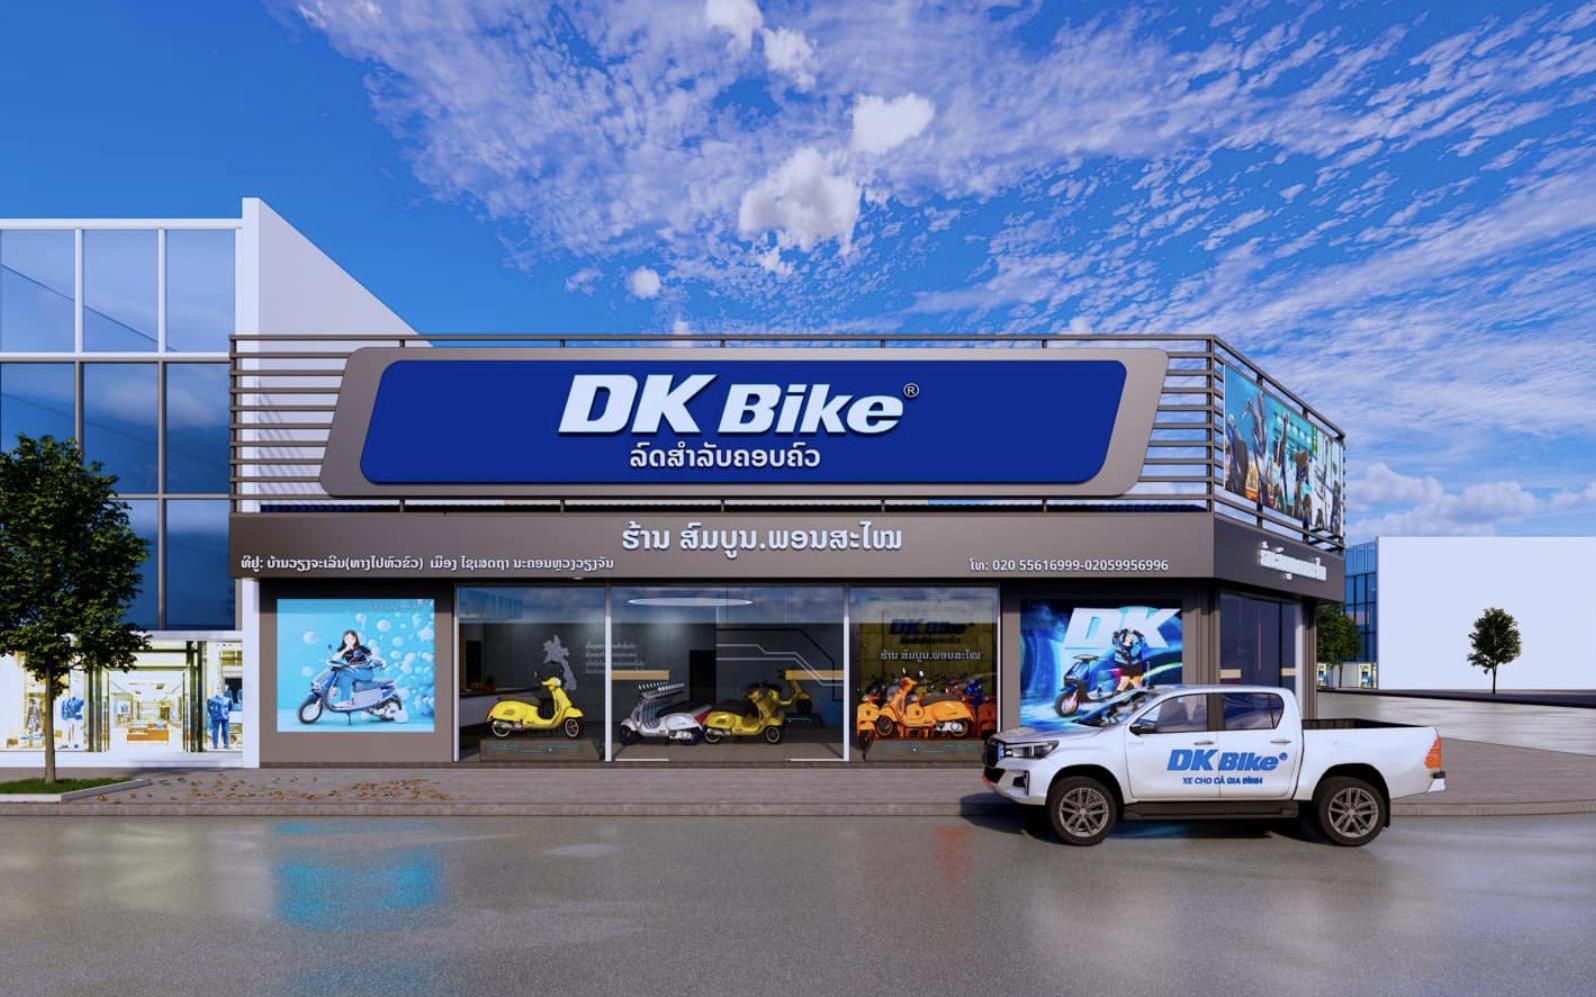 DK Bike tiếp tục tuyển đại lý ủy quyền trên toàn quốc